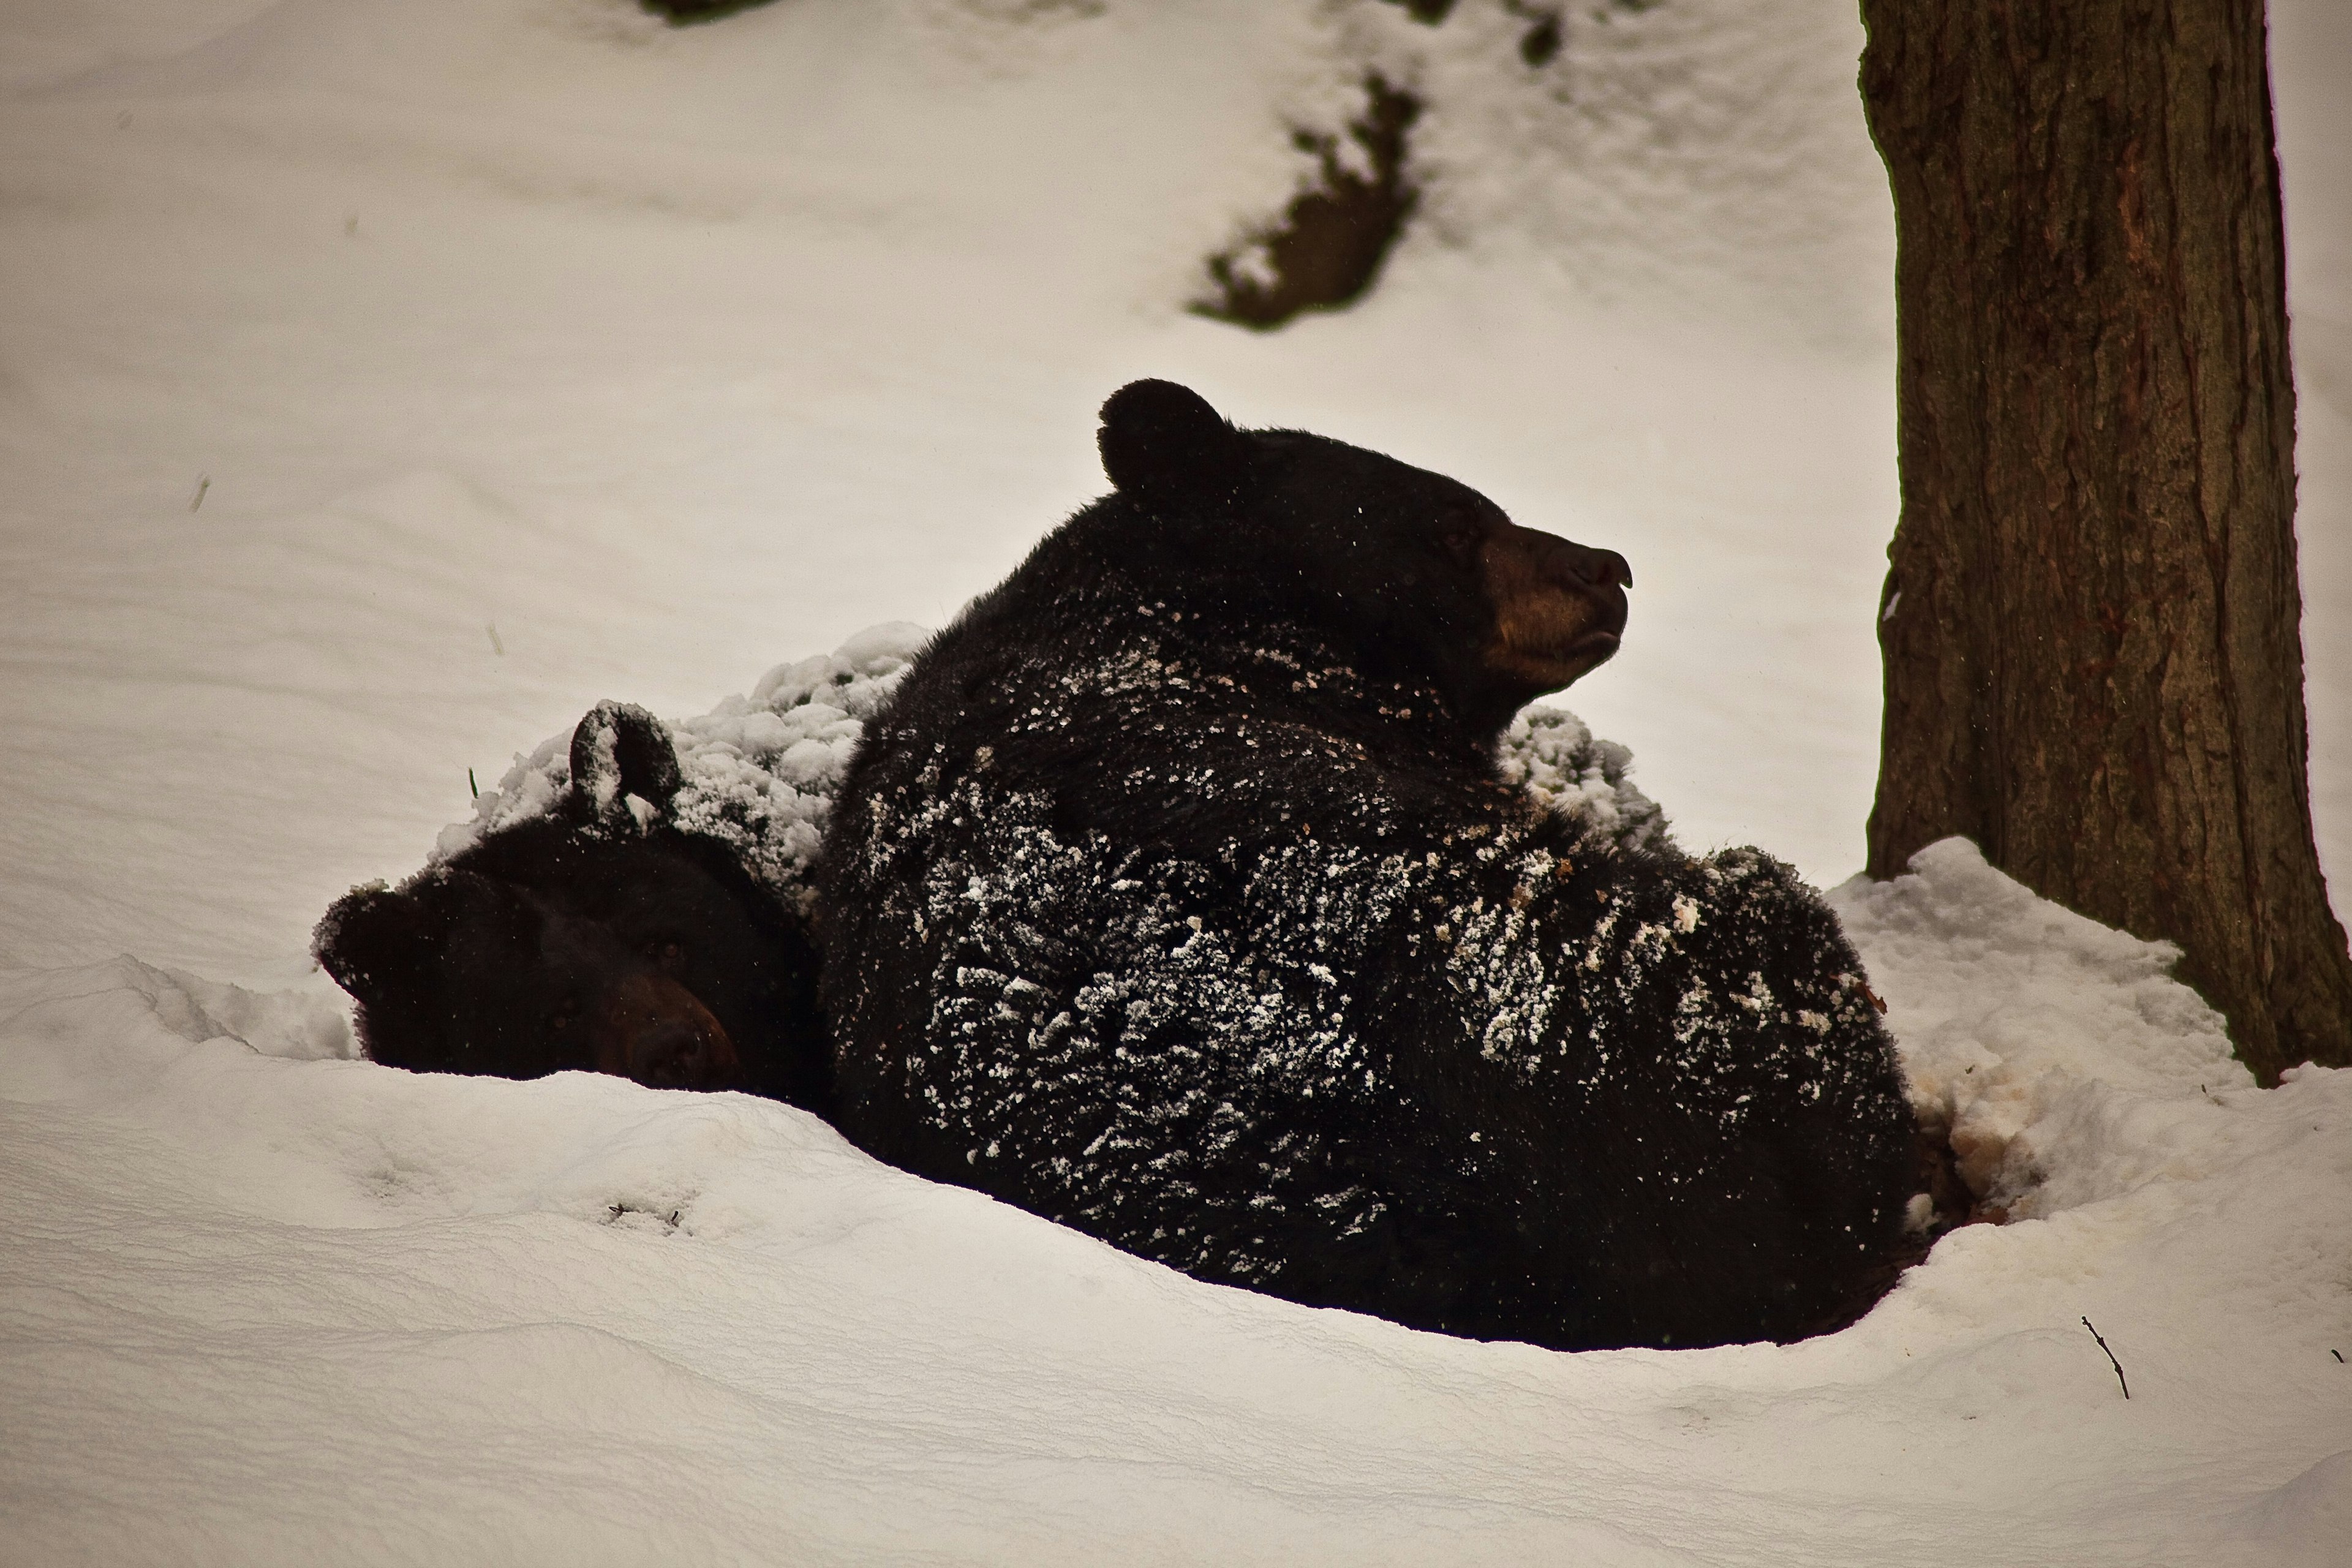 Black bears sleeping in winter